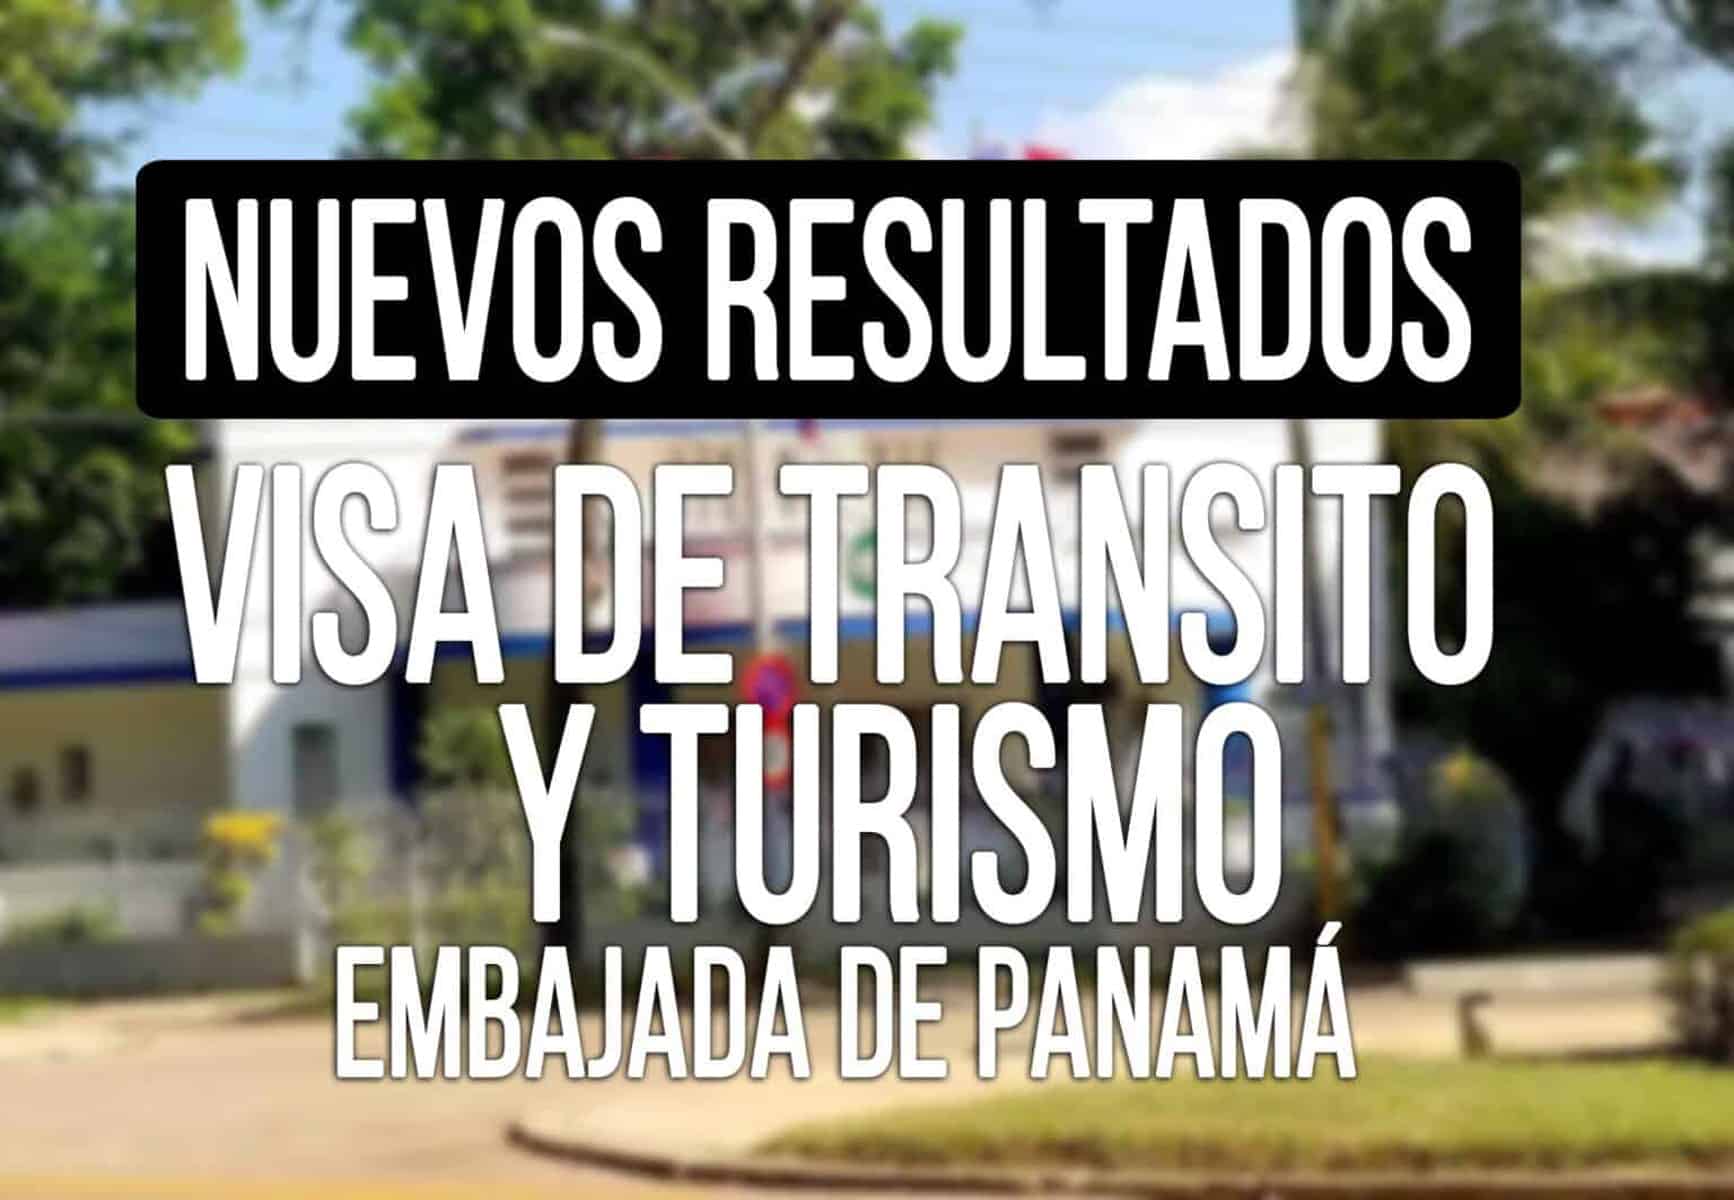 Embajada de Panamá en Cuba Informa sobre Visas de Tránsito y Turismo